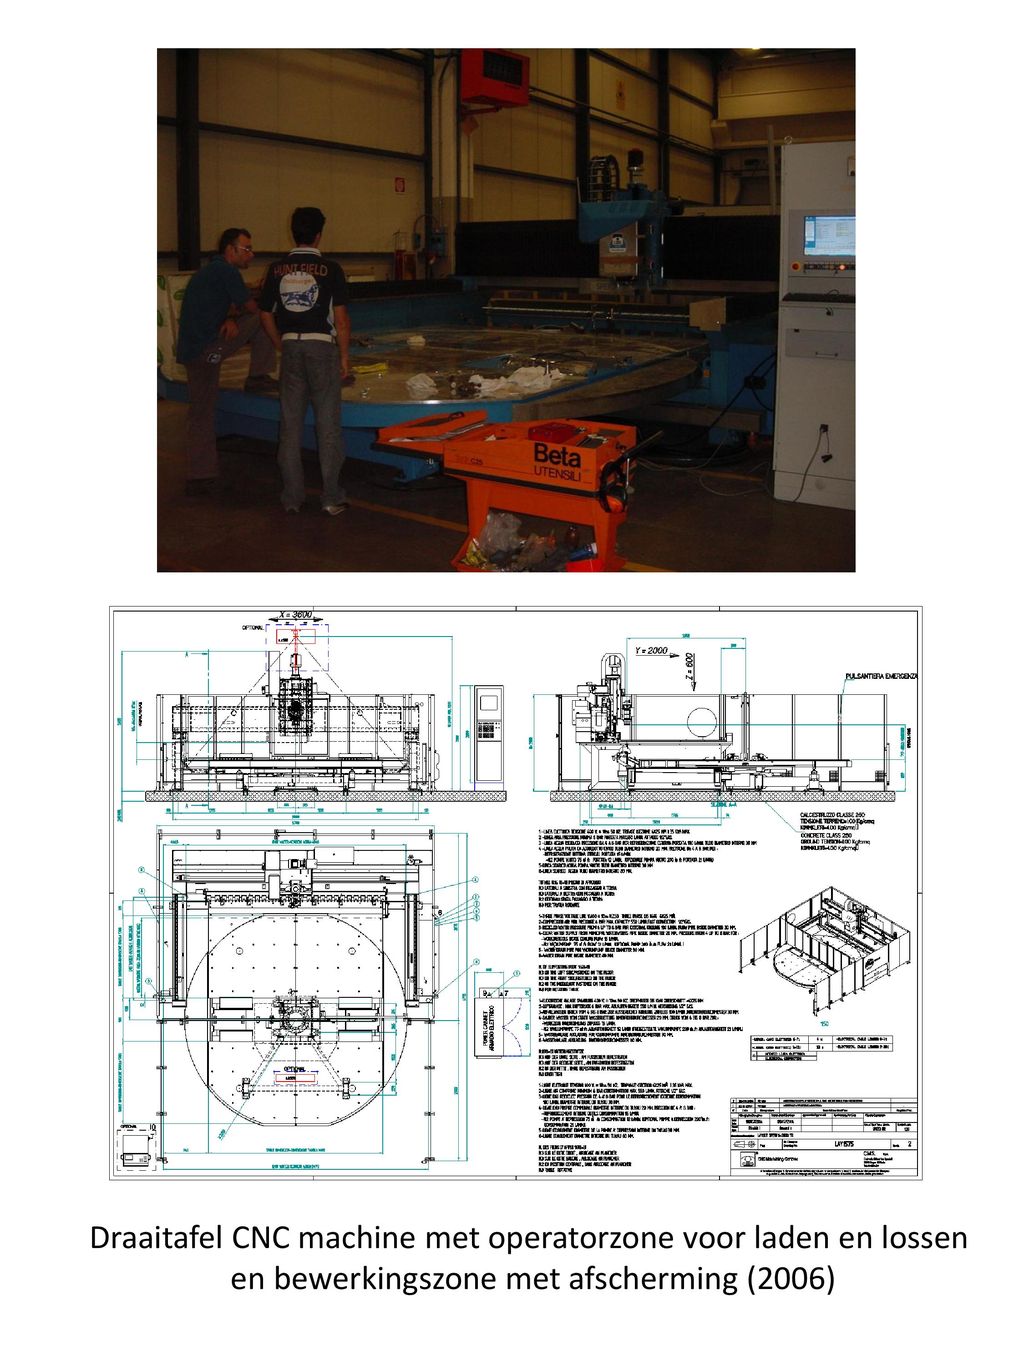 Draaitafel CNC machine met operatorzone voor laden en lossen